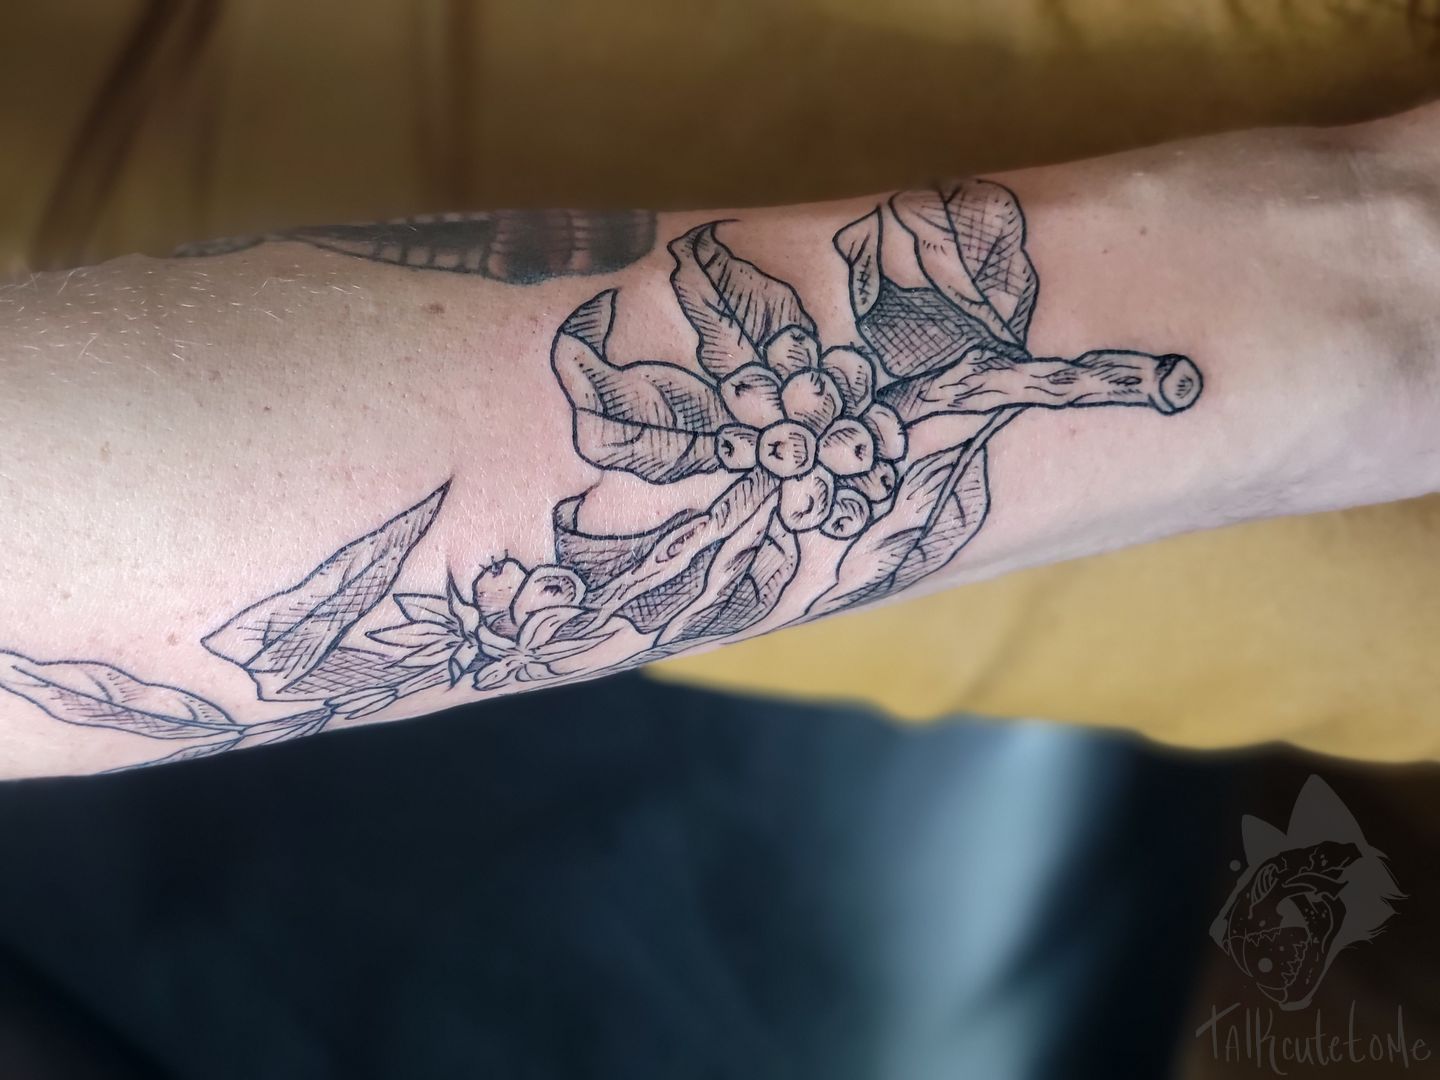 16 Plant Tattoos On Half Sleeve